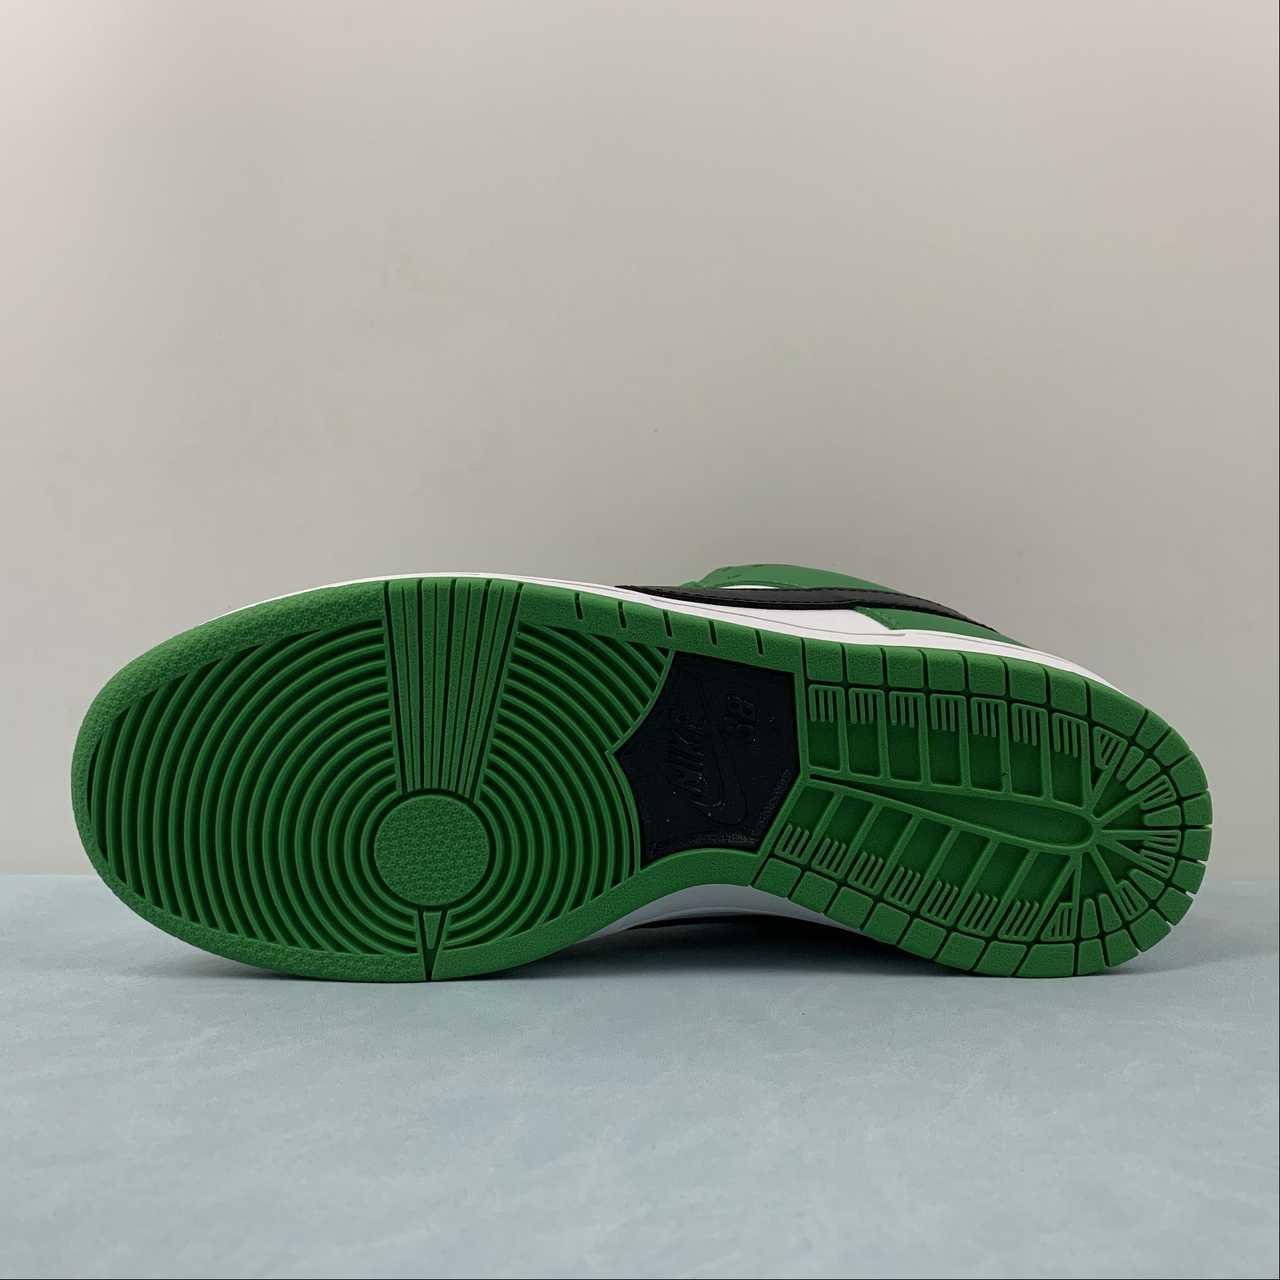      SB Dunk Low Casual board shoes BQ6817-302 3